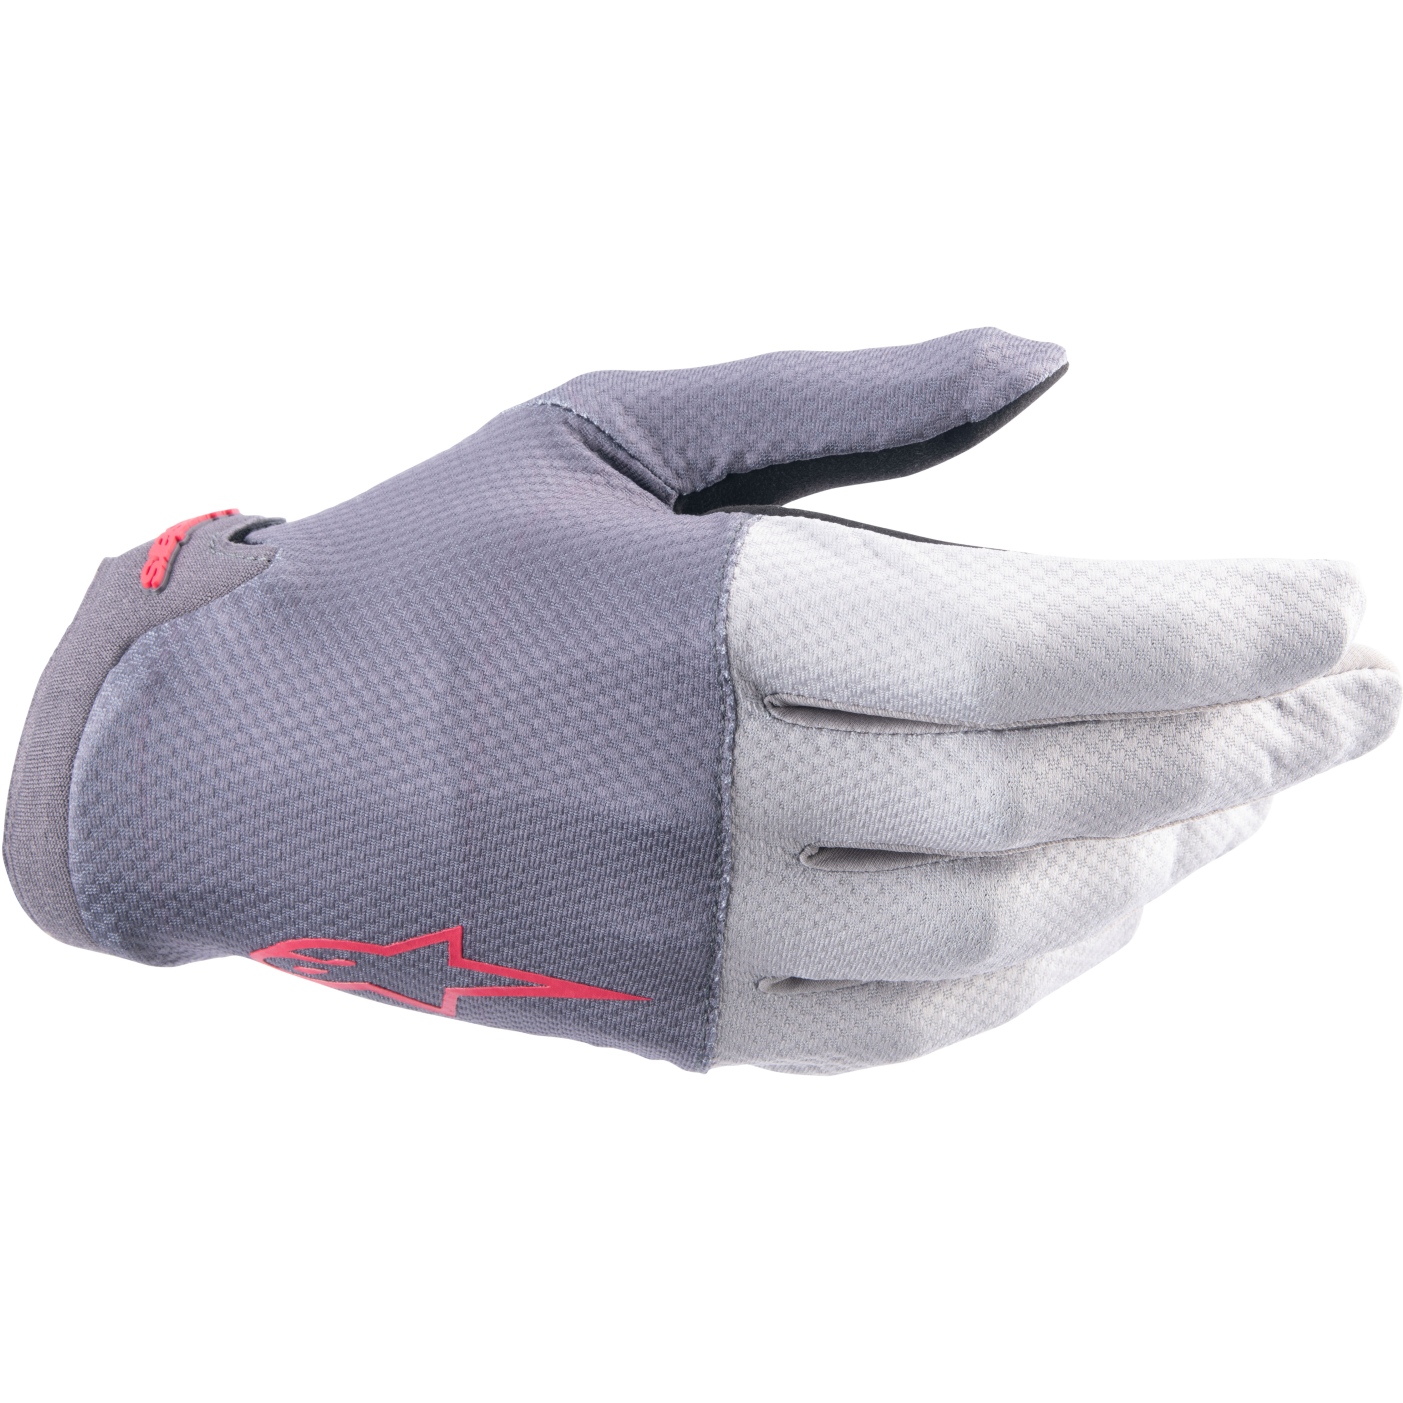 Produktbild von Alpinestars A-Aria Handschuhe - dark gray